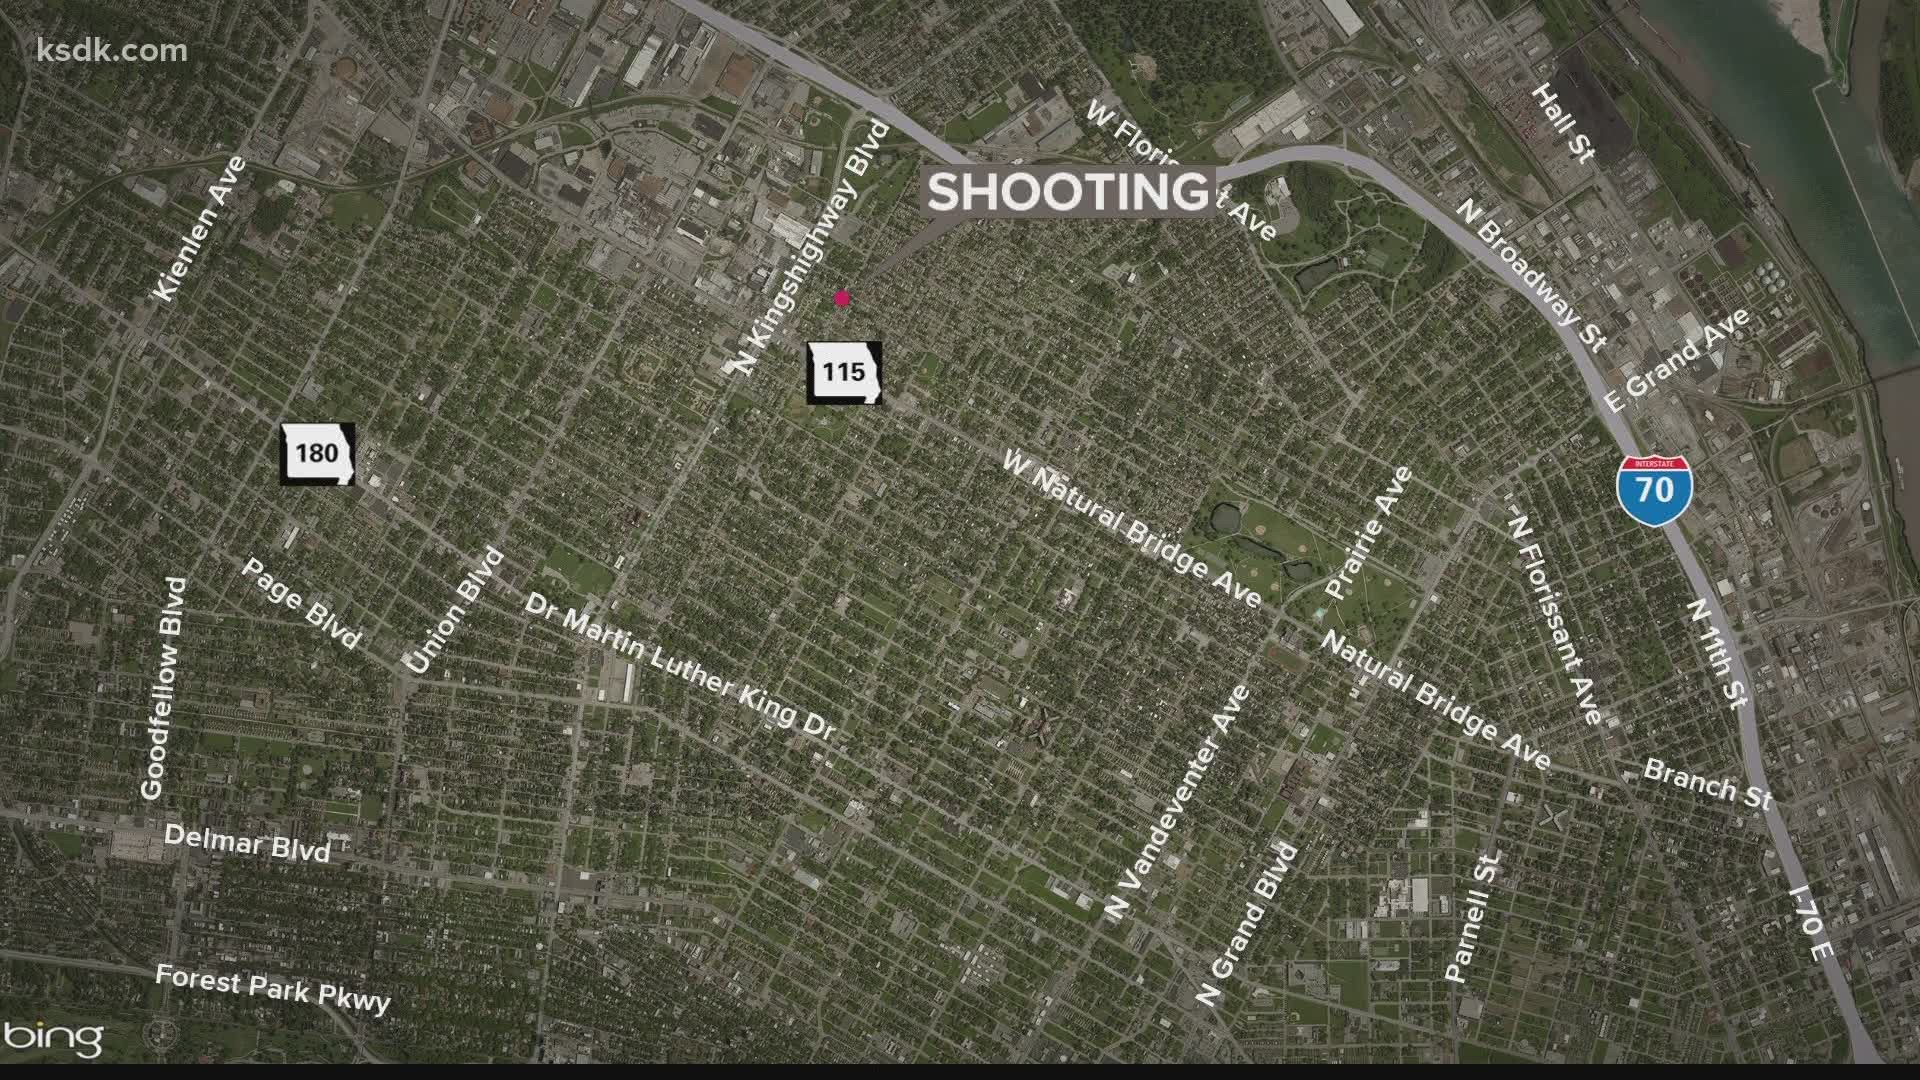 St. Louis news: Teen shot by 11-year-old in Penrose neighborhood | www.waterandnature.org